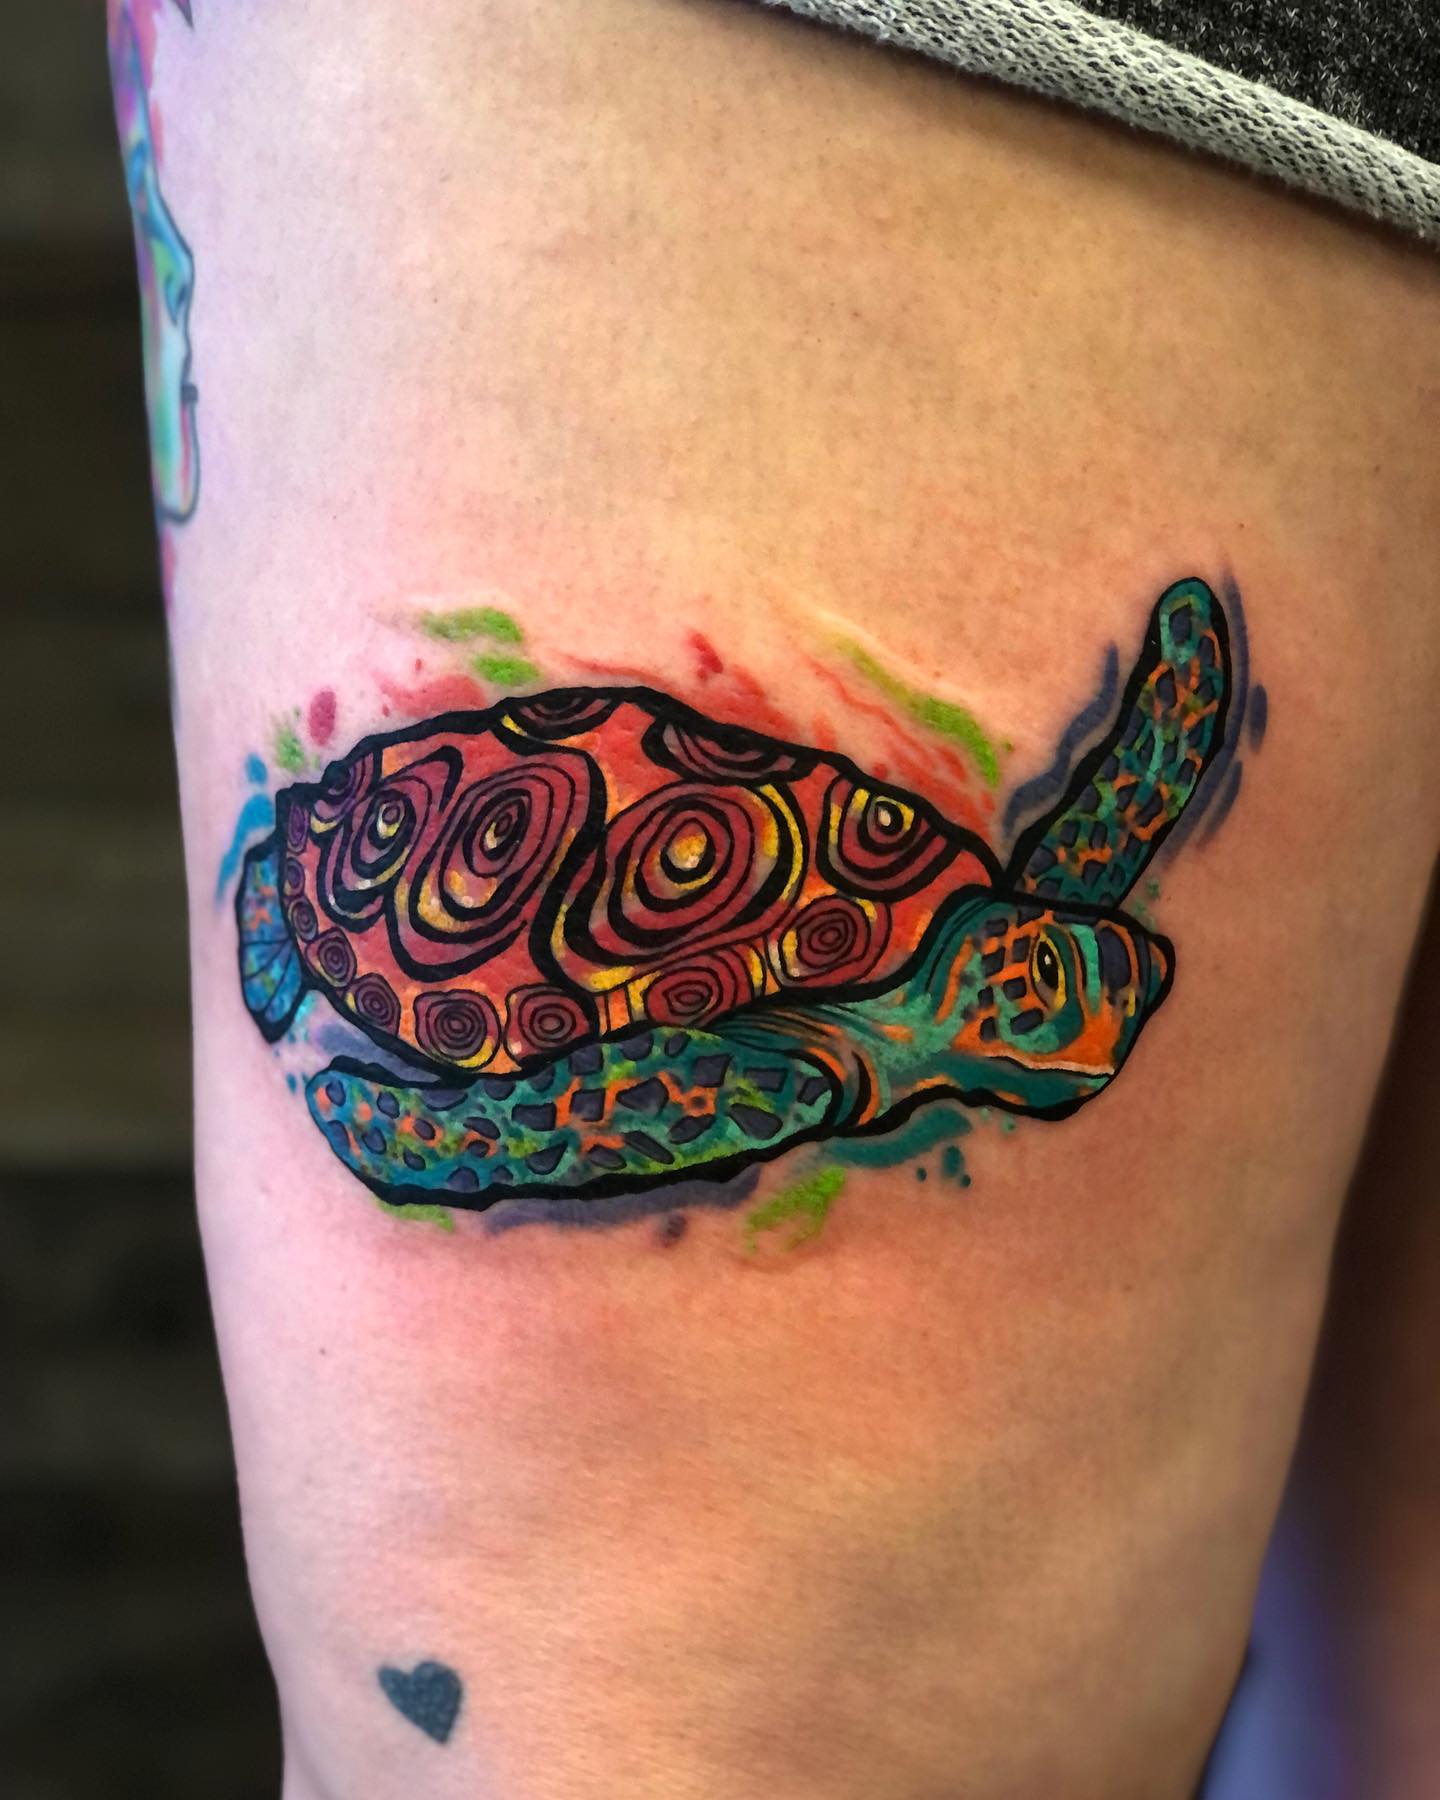 Encantador tatuaje de tortuga marina